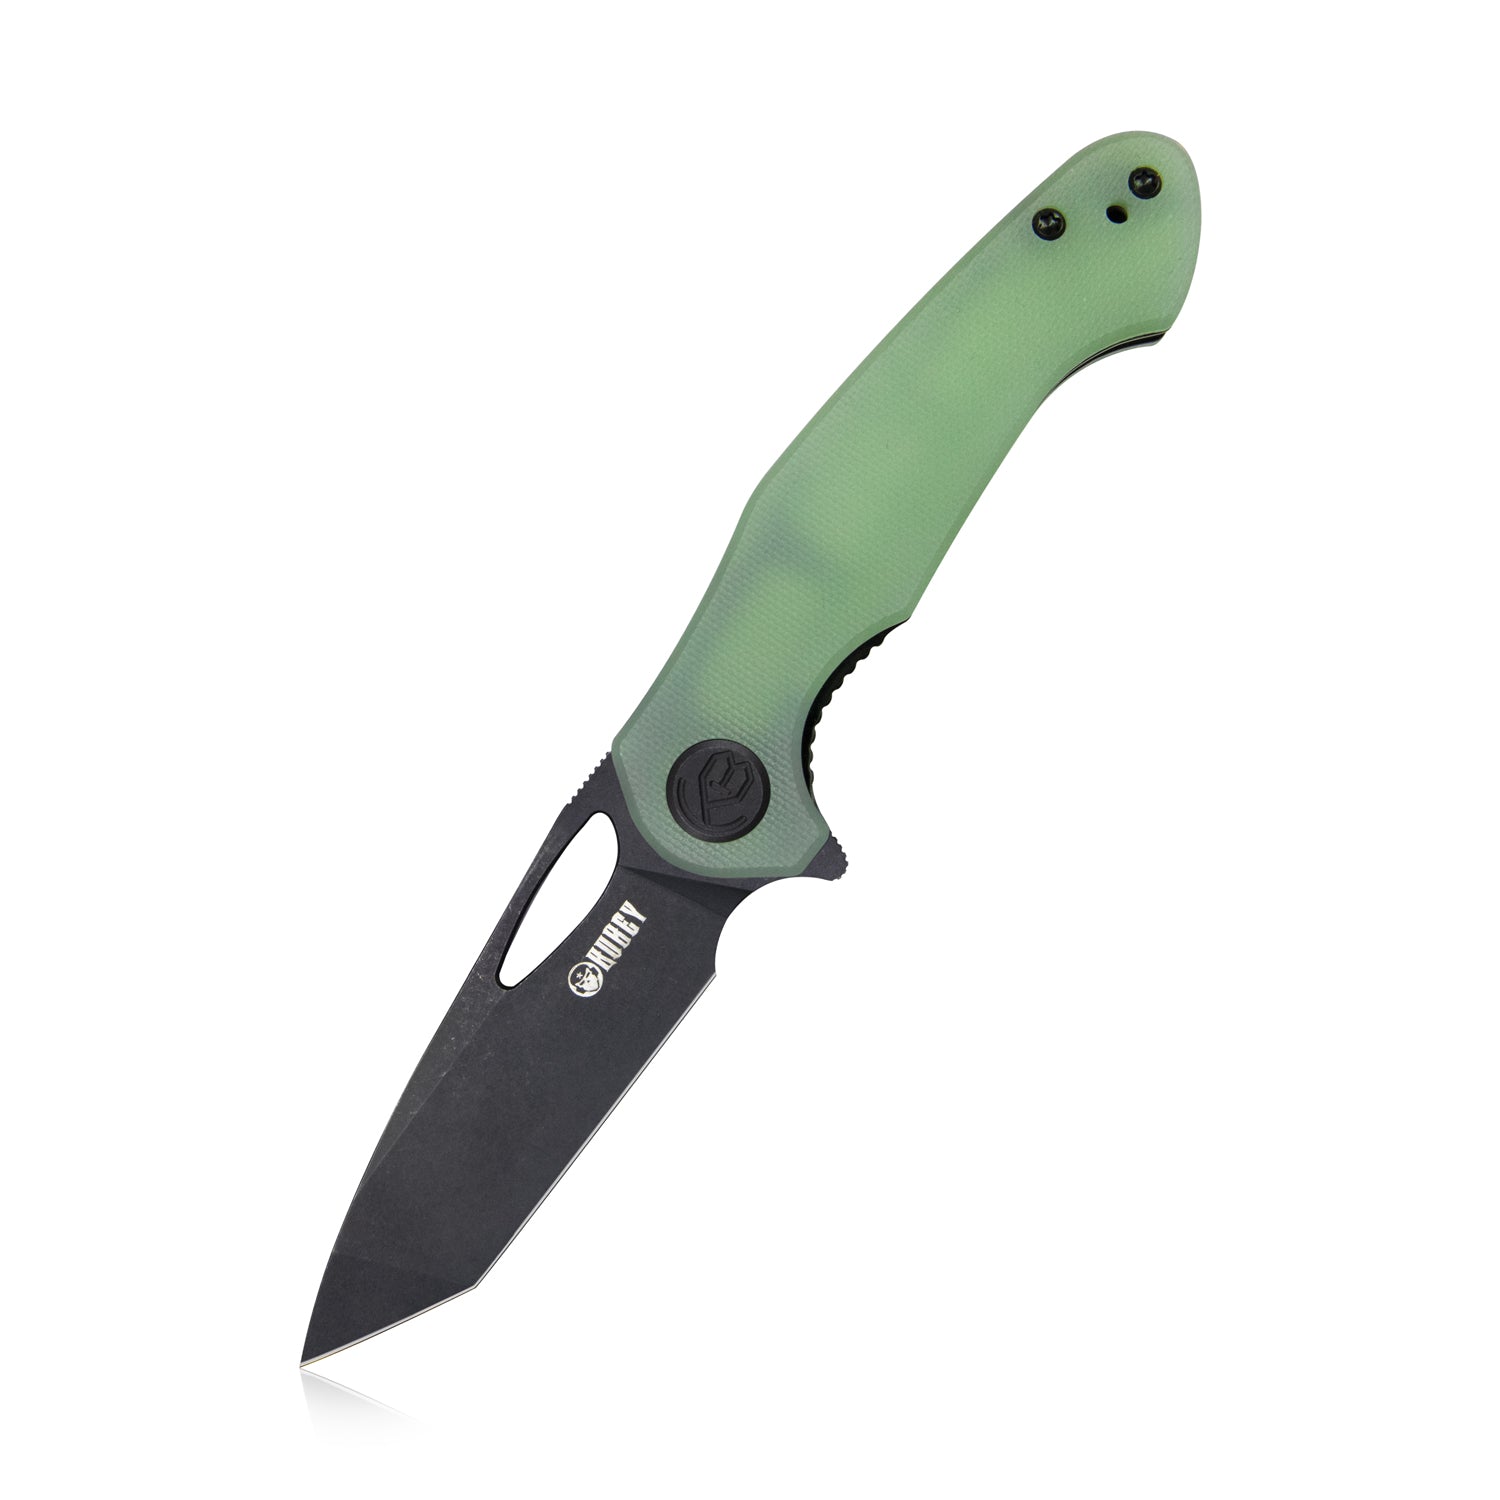 Kubey Dugu Liner Lock Folding Knife Jade G10 Handle 2.91'' Dark Stonewashed 14C28N Blade KU159E